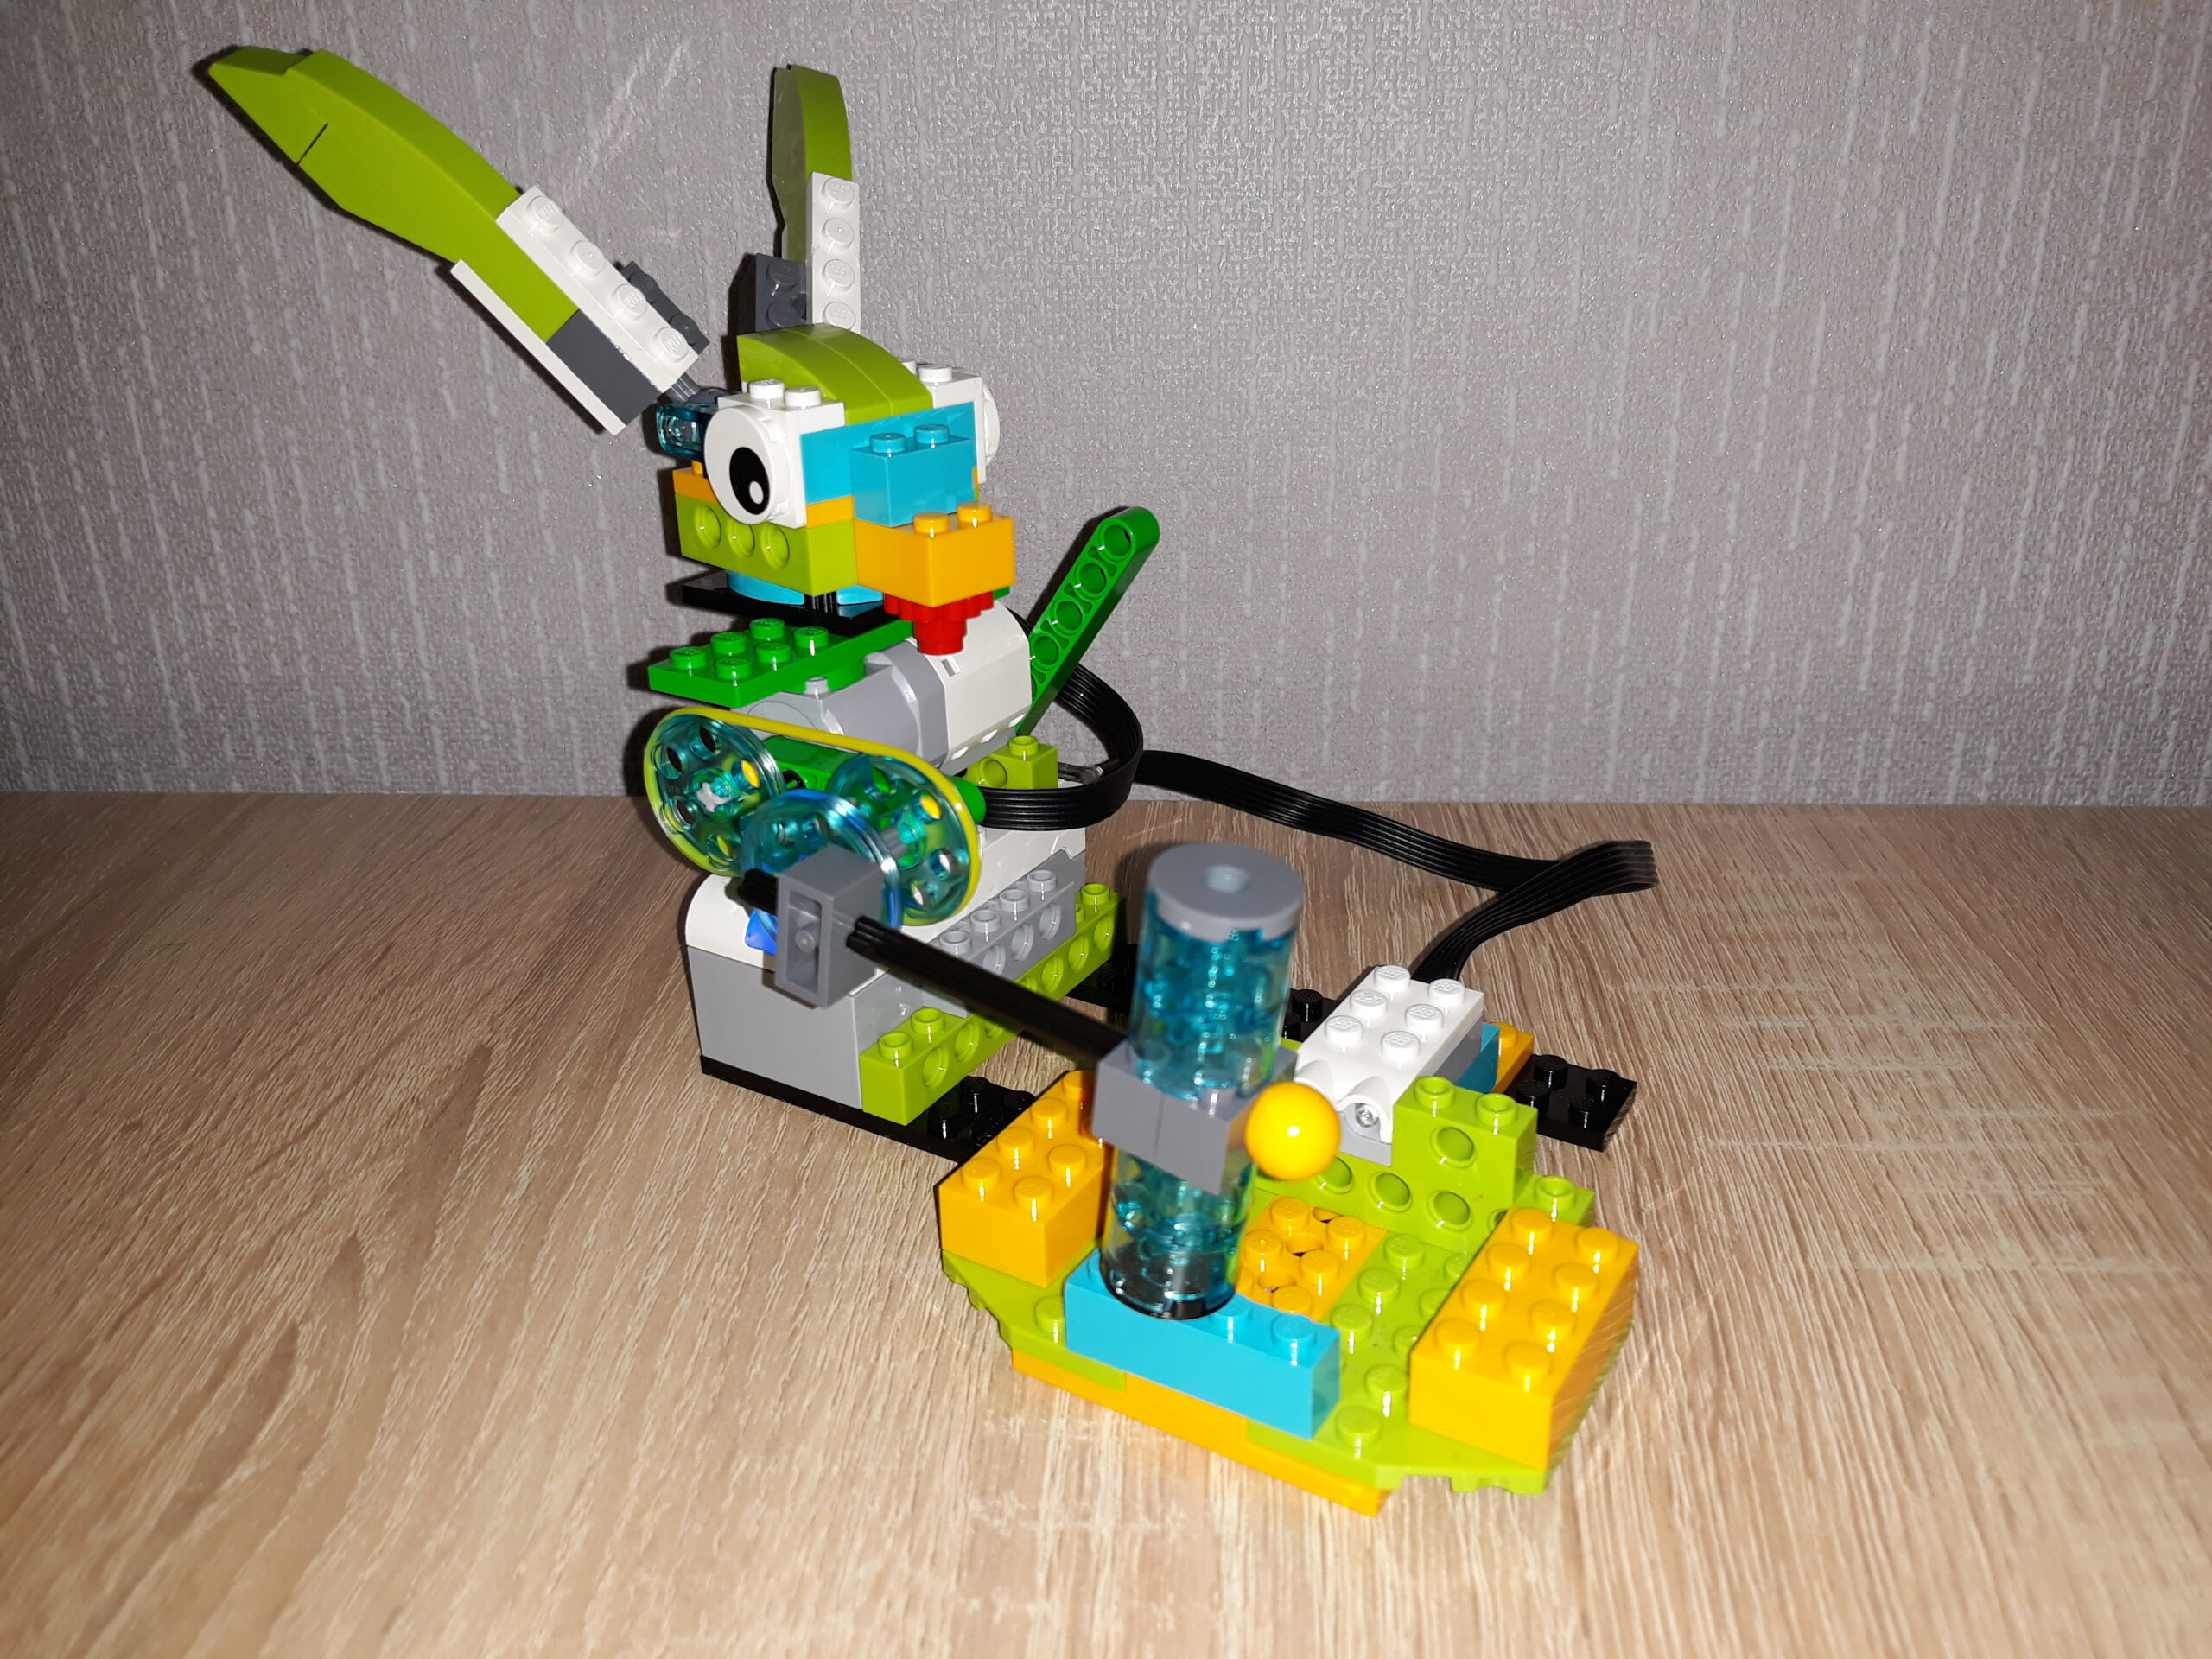 Инструкция по сборке из набора LEGO Education WeDo 2.0 Проворный кролик